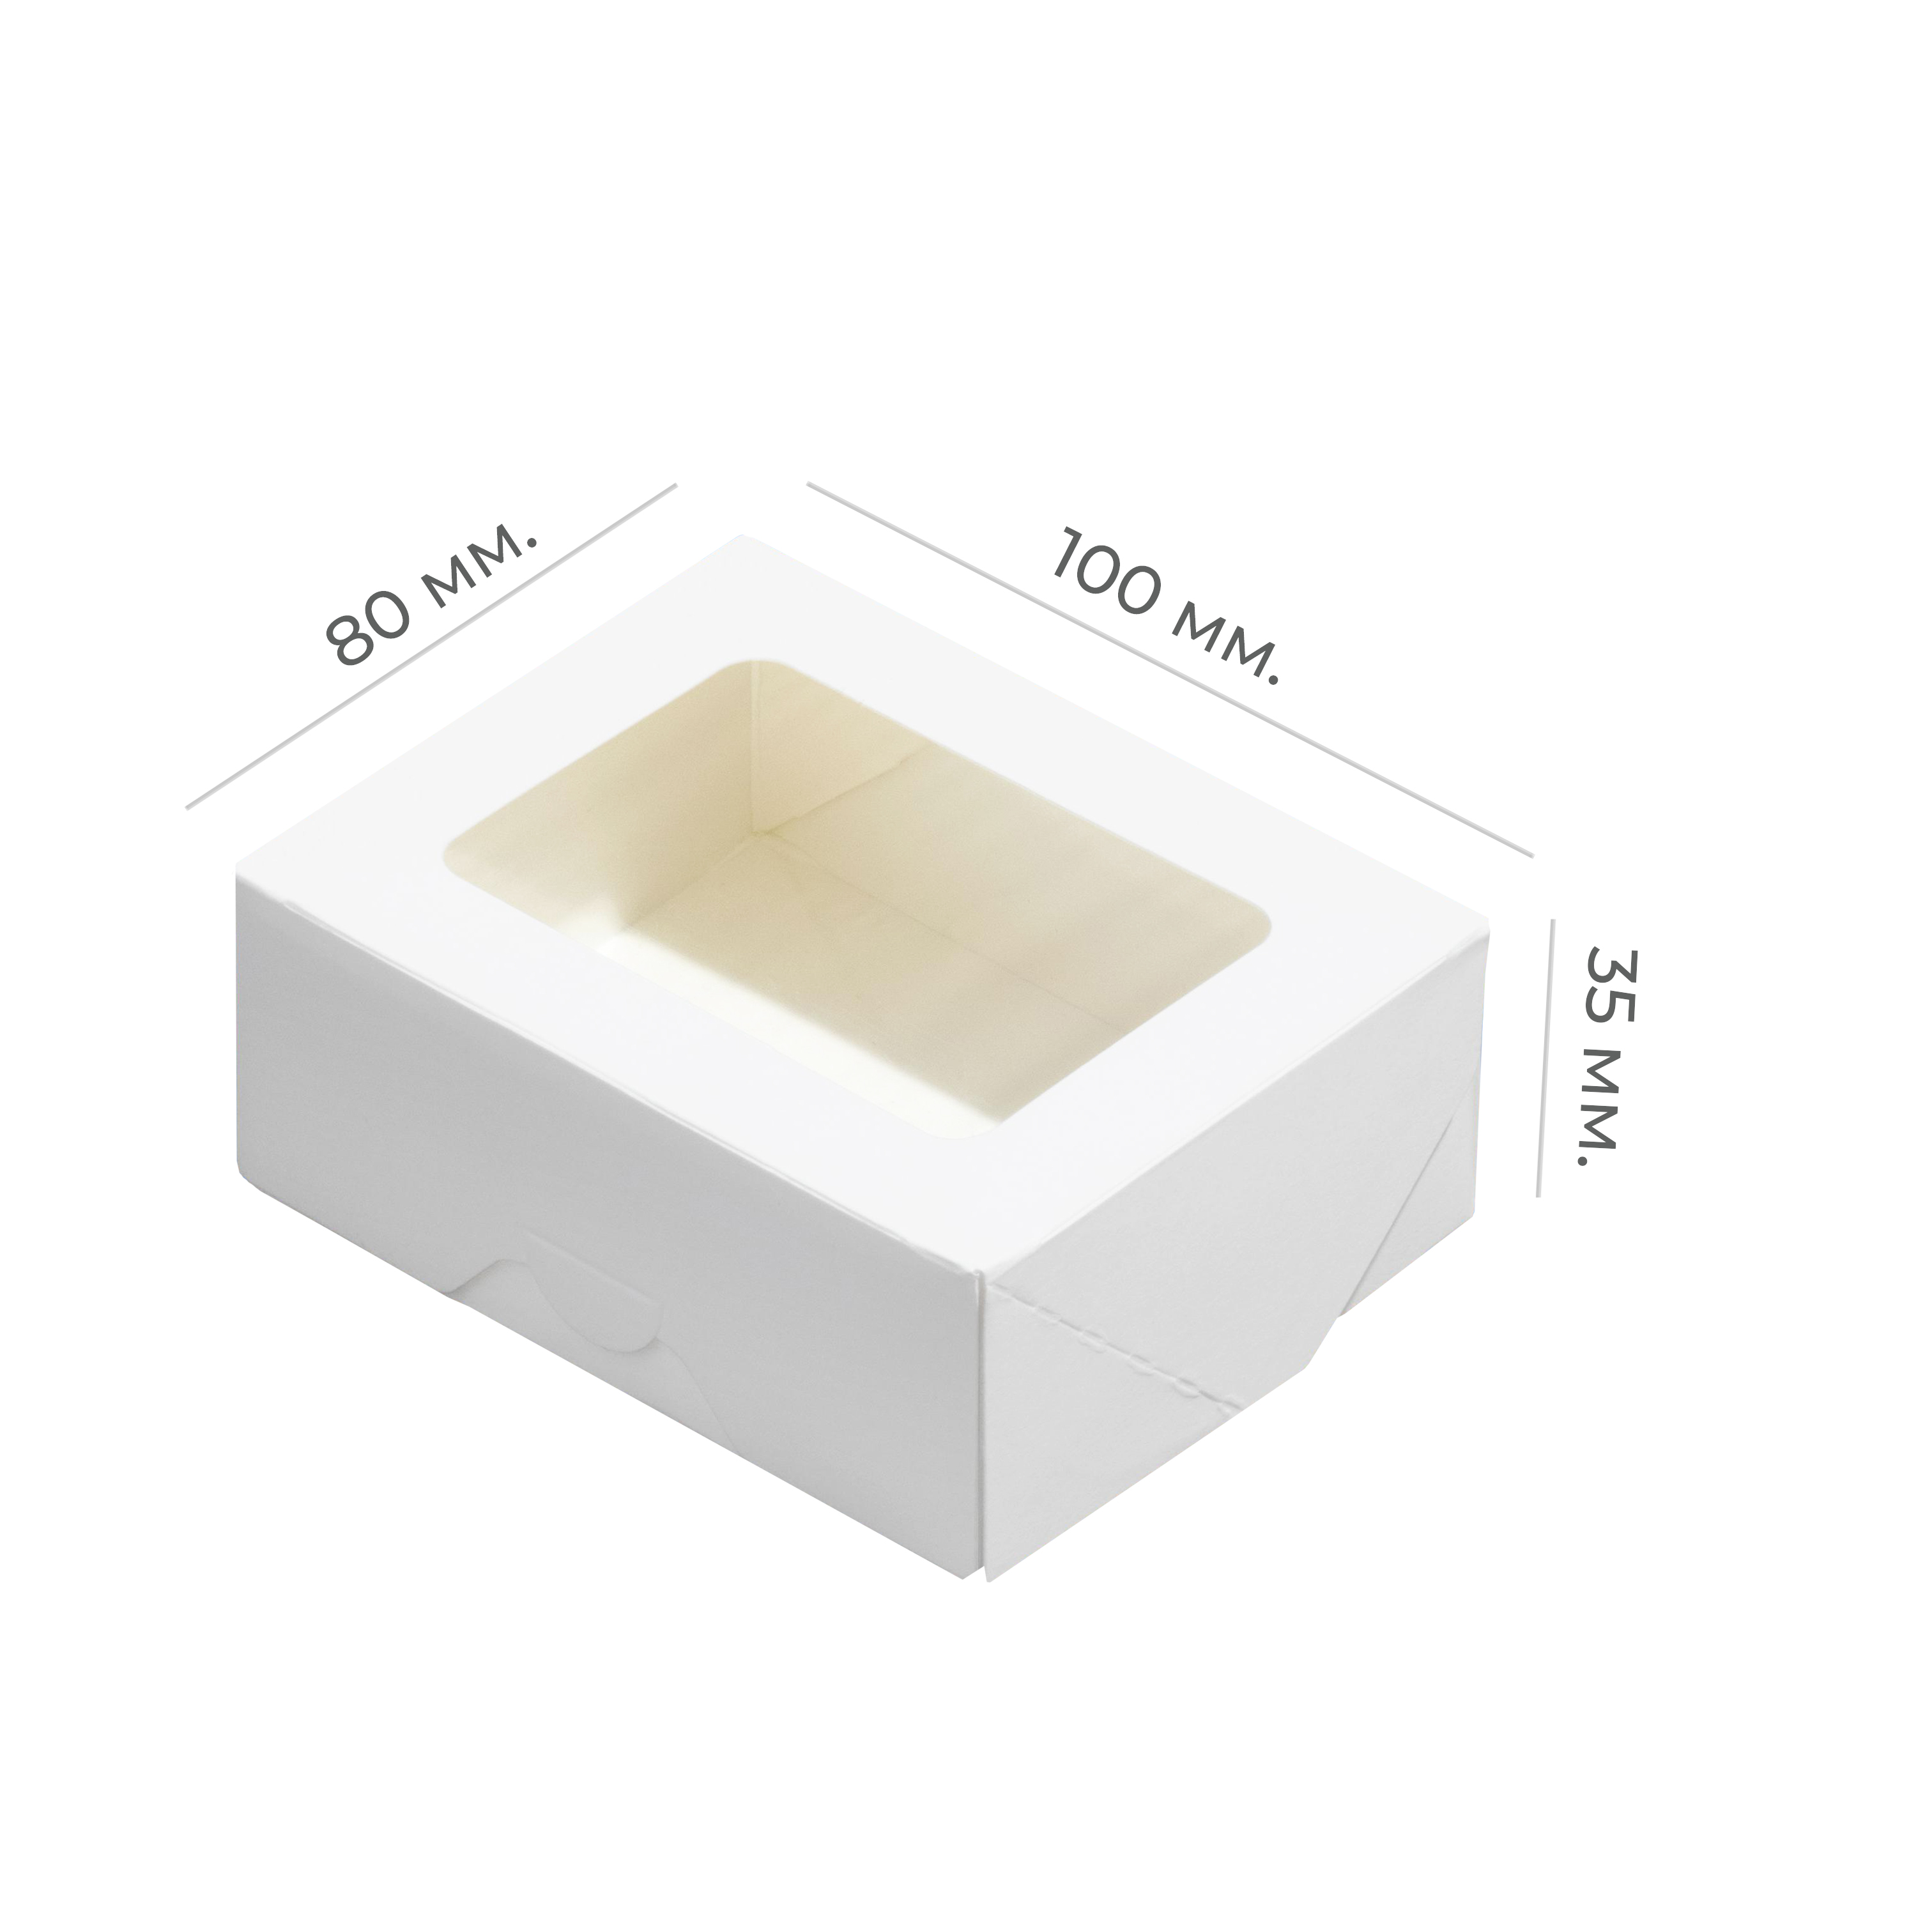 Контейнер картонный "Tabox PRO" 300мл белый 100*80*35мм ForGenika (25/400)